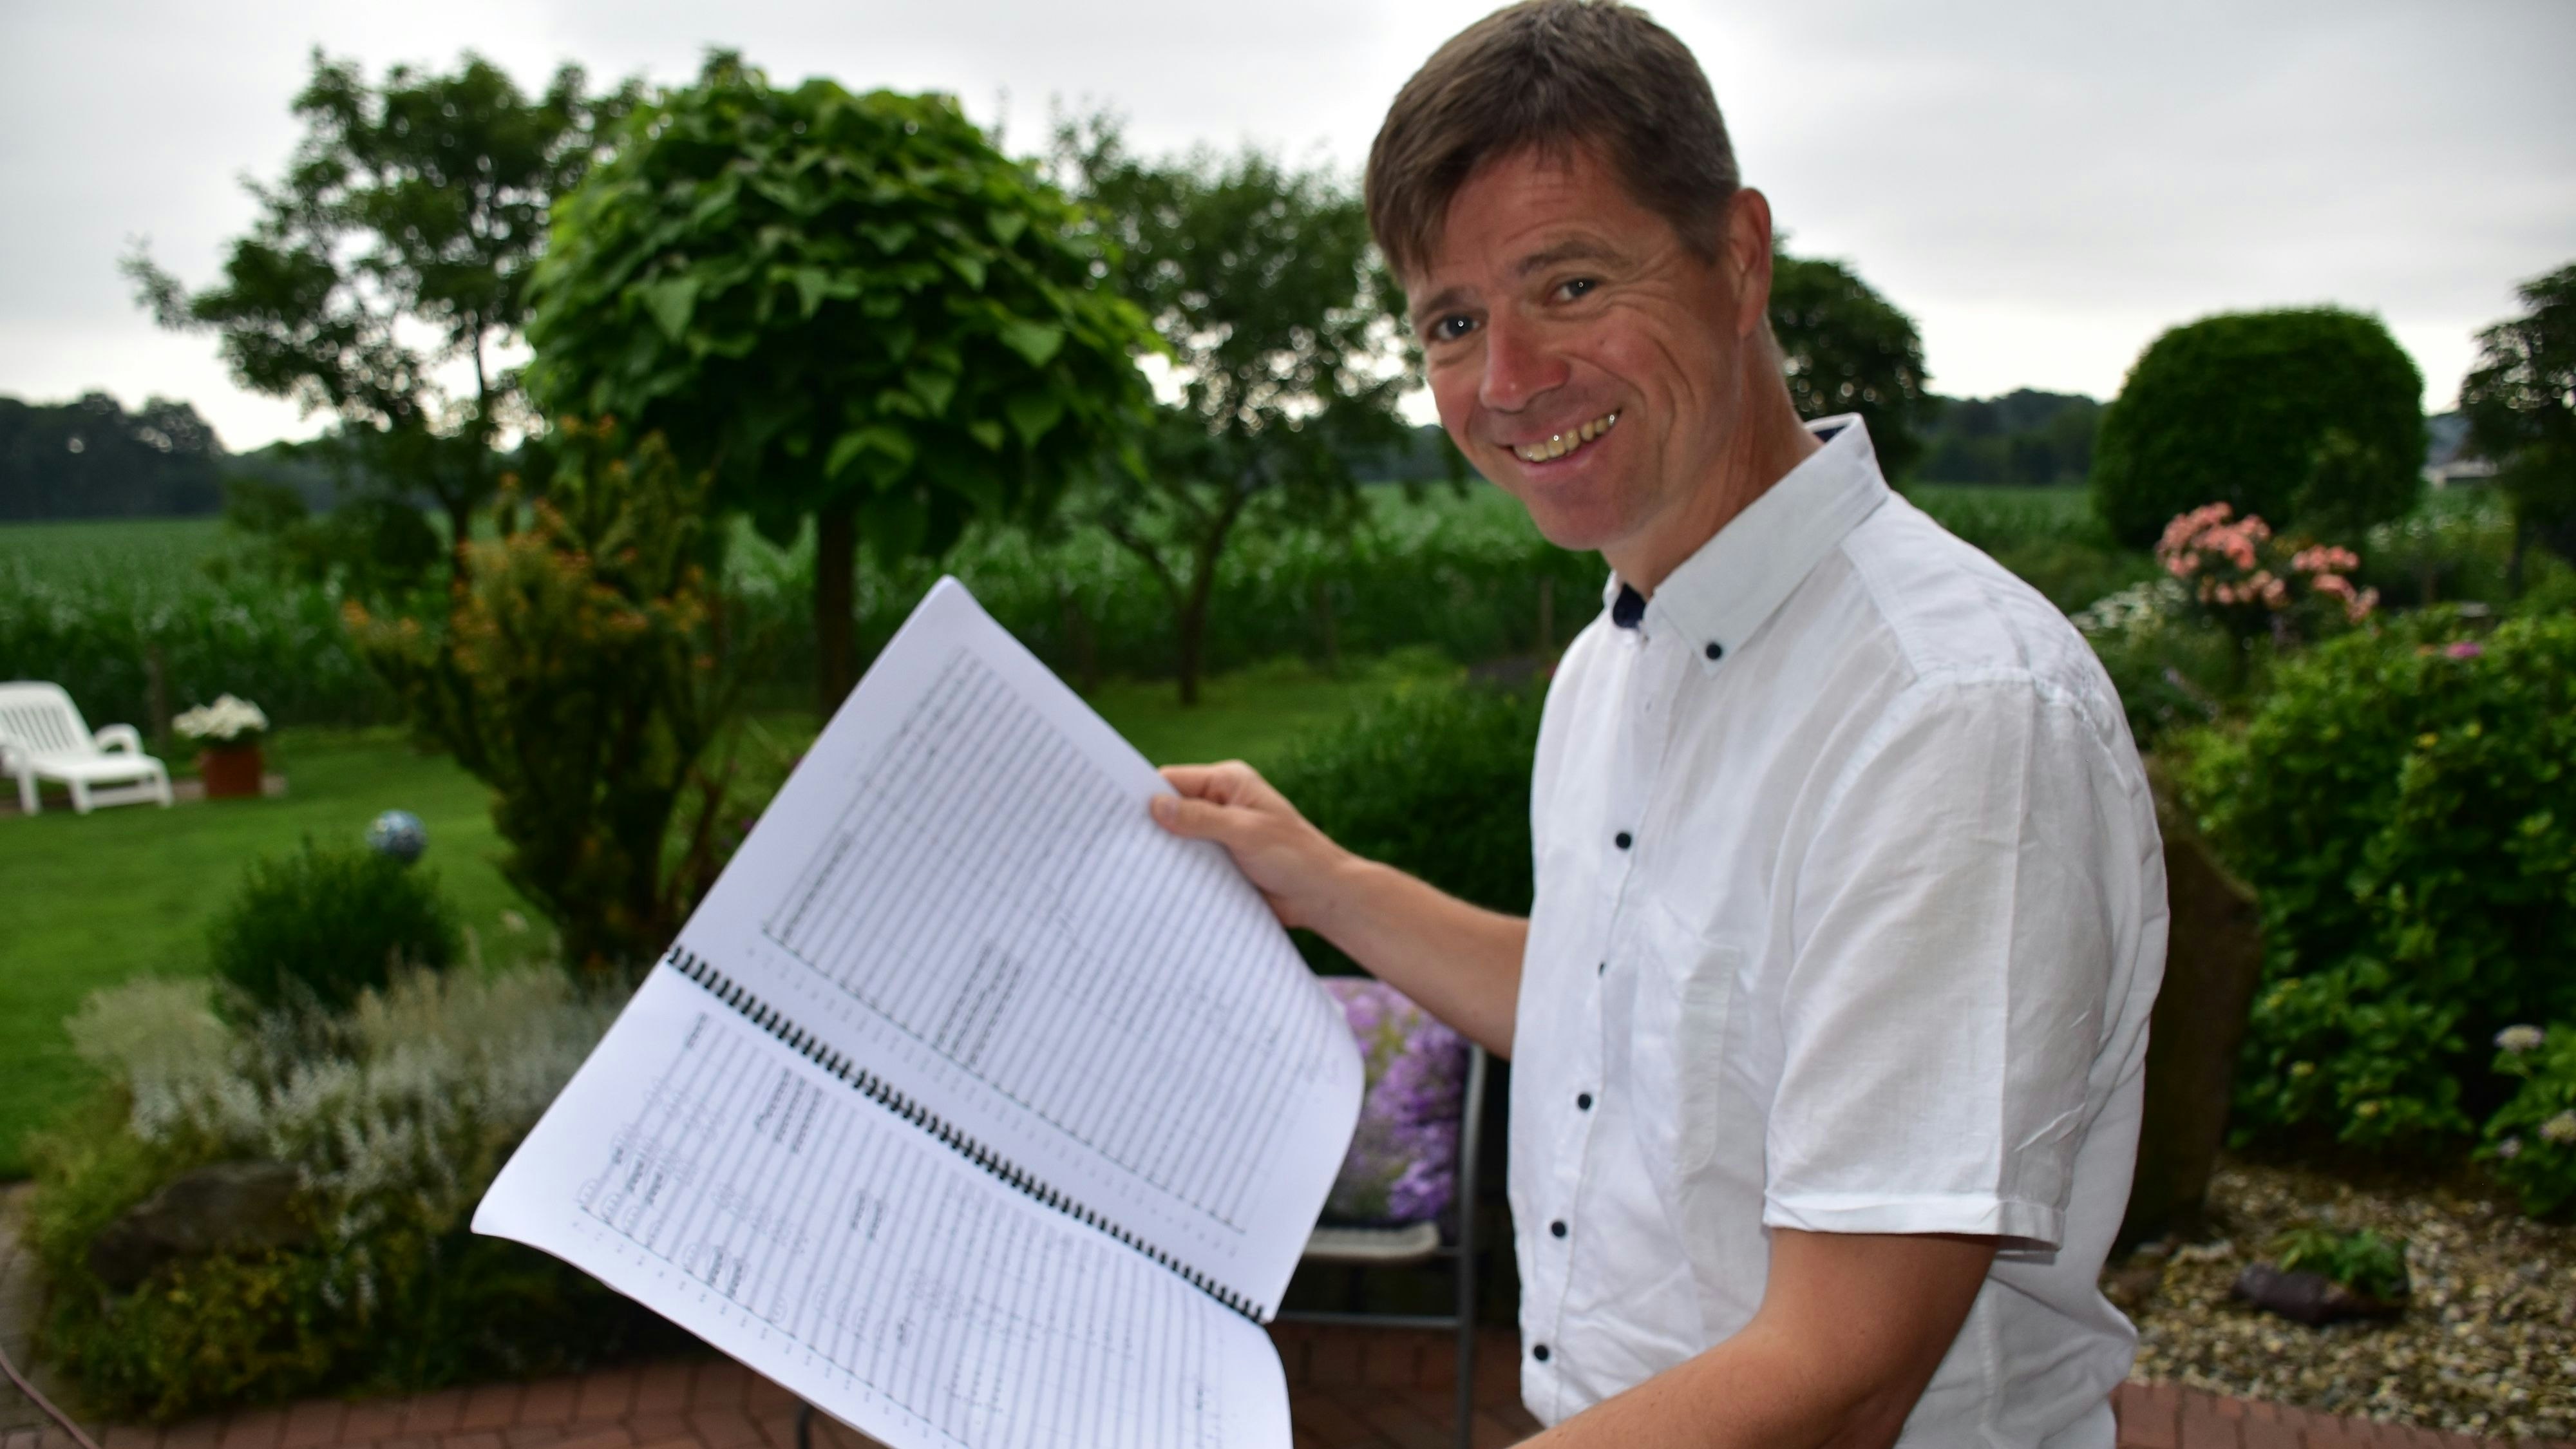 Große Aufgabe: Heiko Maschmann möchte beim Start des Instrumentalmusikvereins Neuenkirchen am Samstag die Note "Hervorragend" erspielen. Foto: Lammert